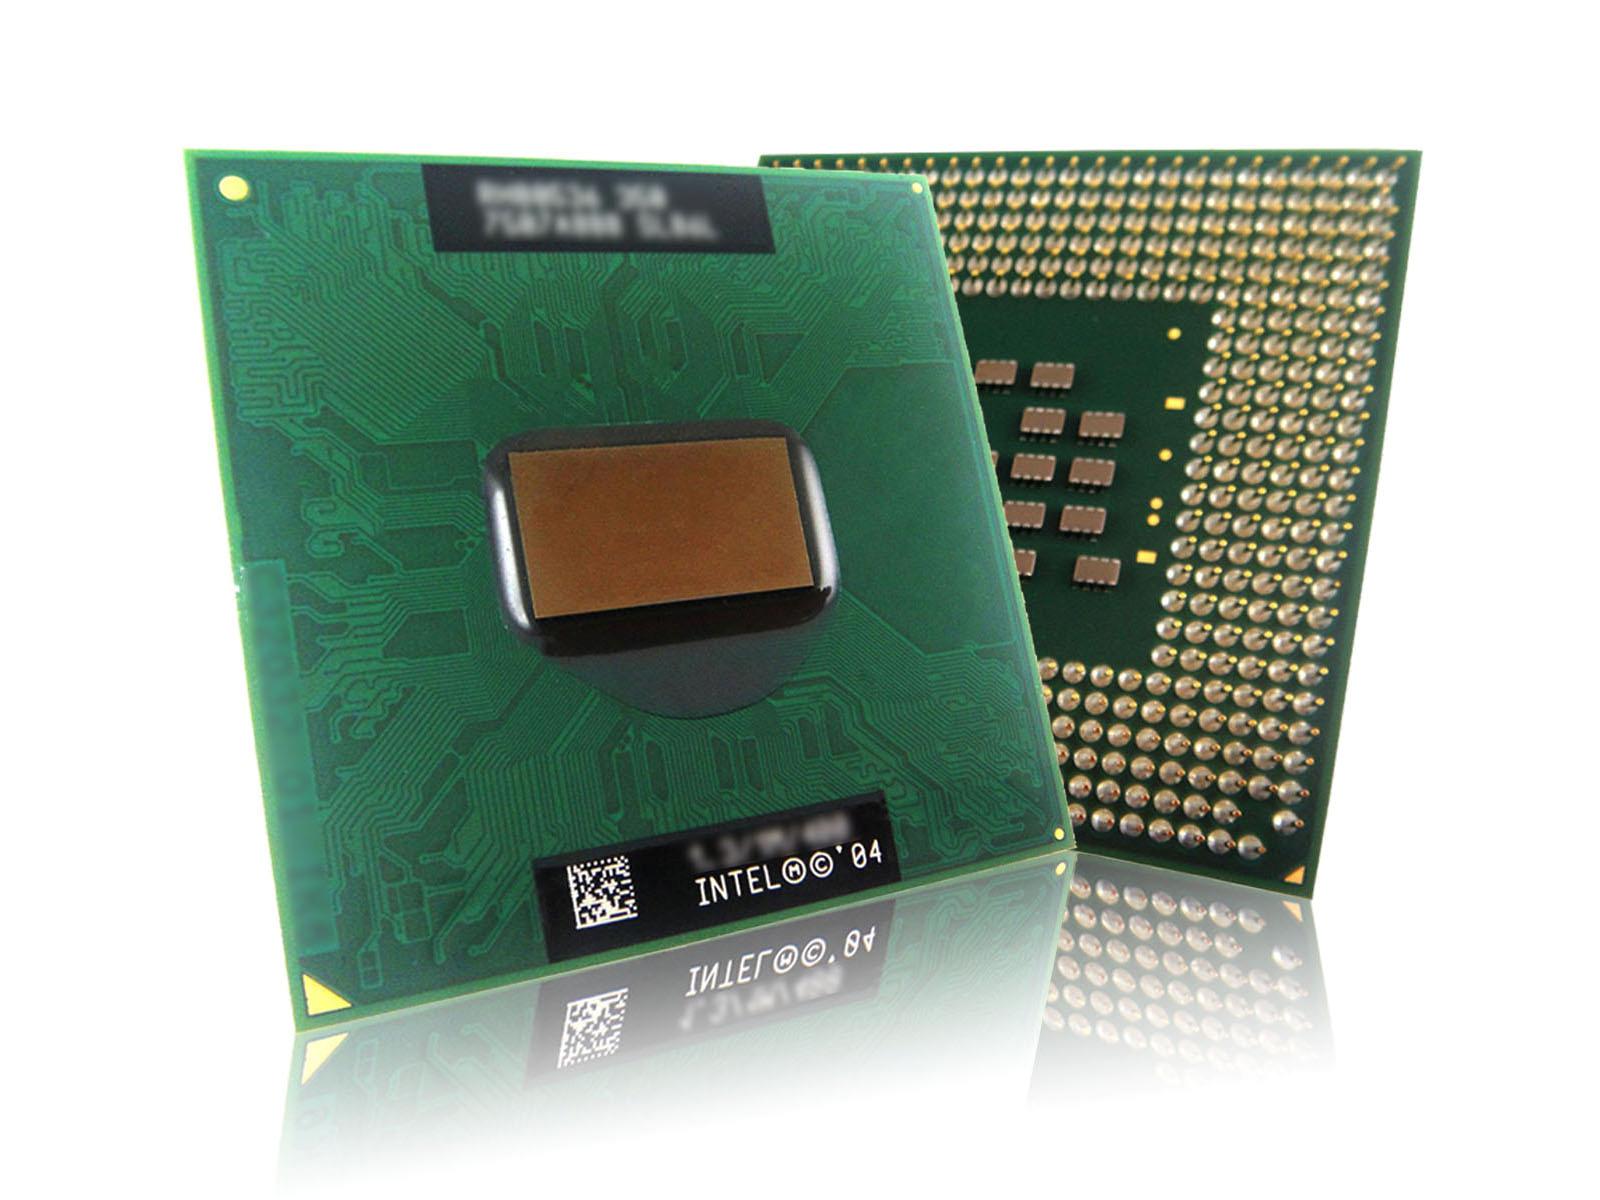 Pentium M 1.8G